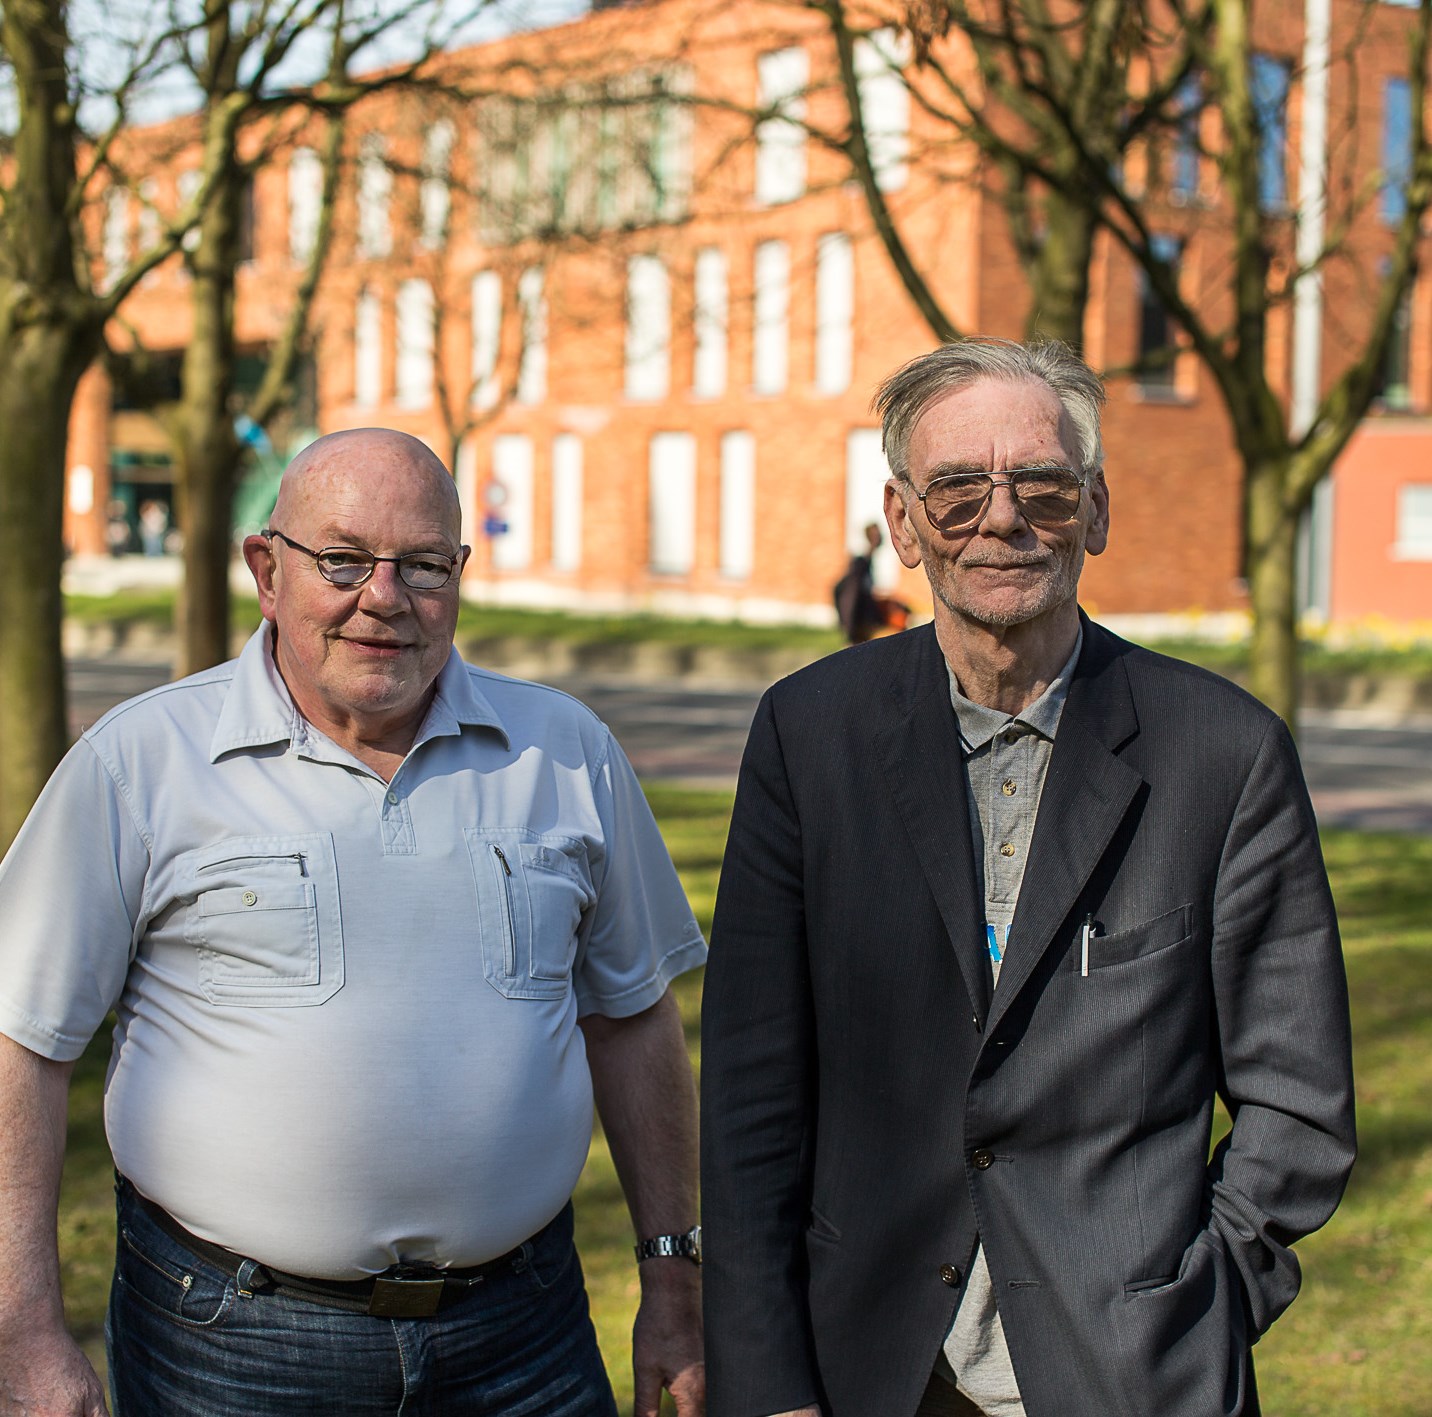 VRIJWILLIGERSWERK Getuigenissen Roger Rombaut en Rudy Van Driessche werken als vrijwilliger voor De Knoop. Roger knapt bij de mensen thuis klusjes op, Rudy bemant de telefoonster.